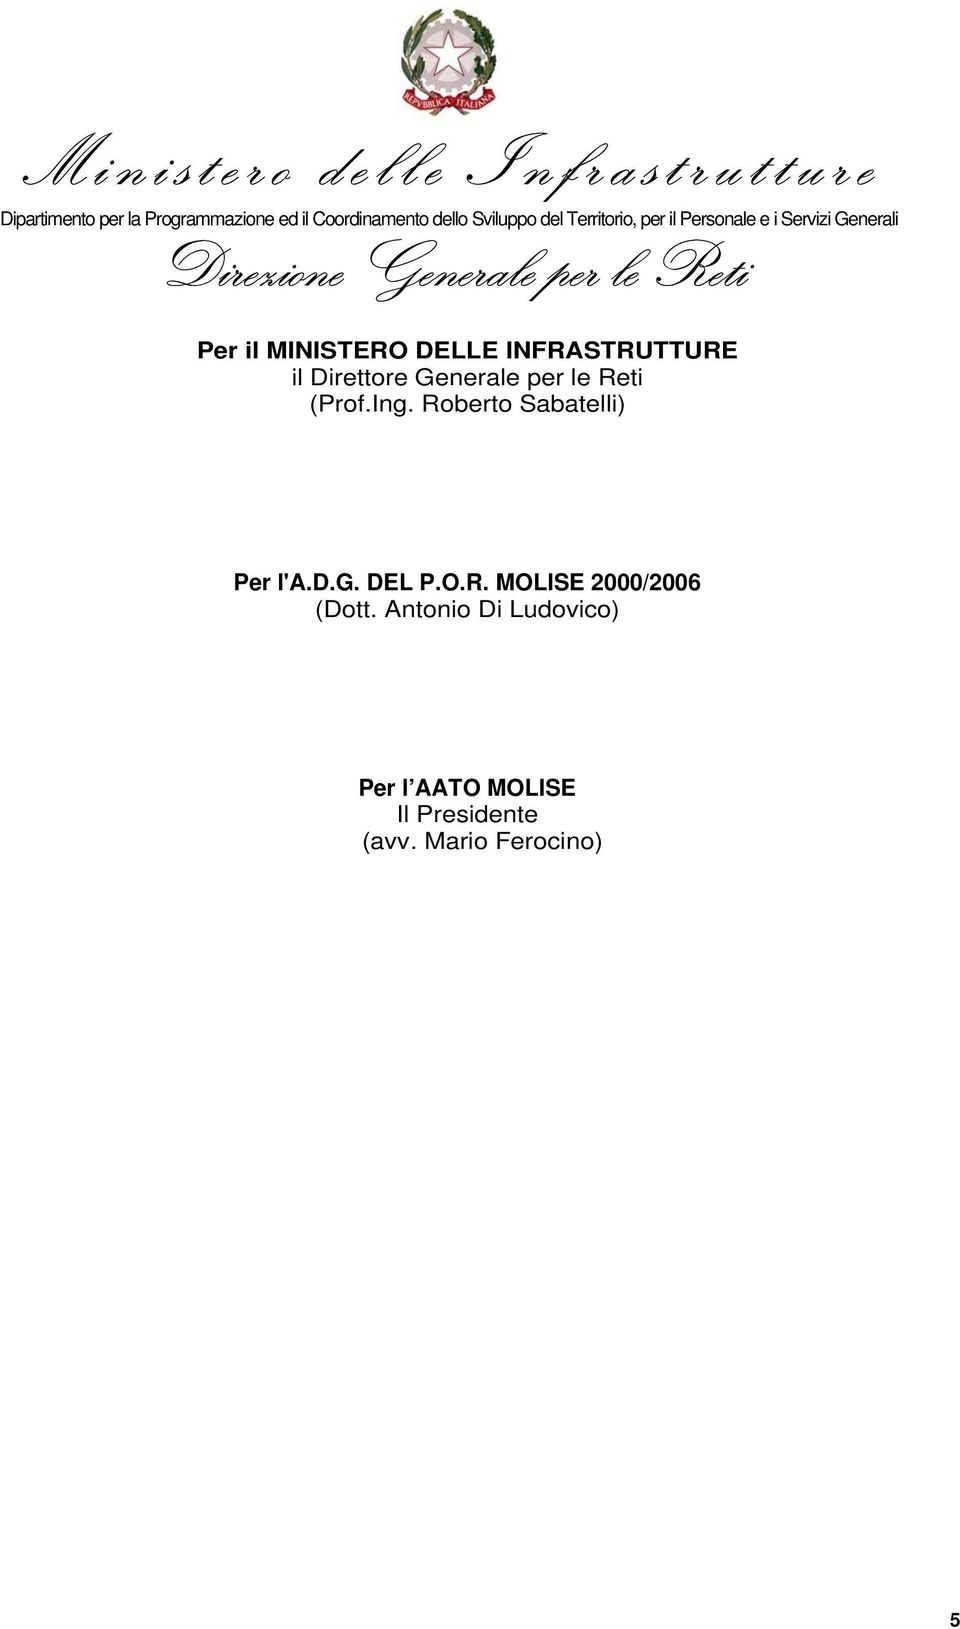 Roberto Sabatelli) Per l'a.d.g. DEL P.O.R. MOLISE 2000/2006 (Dott.